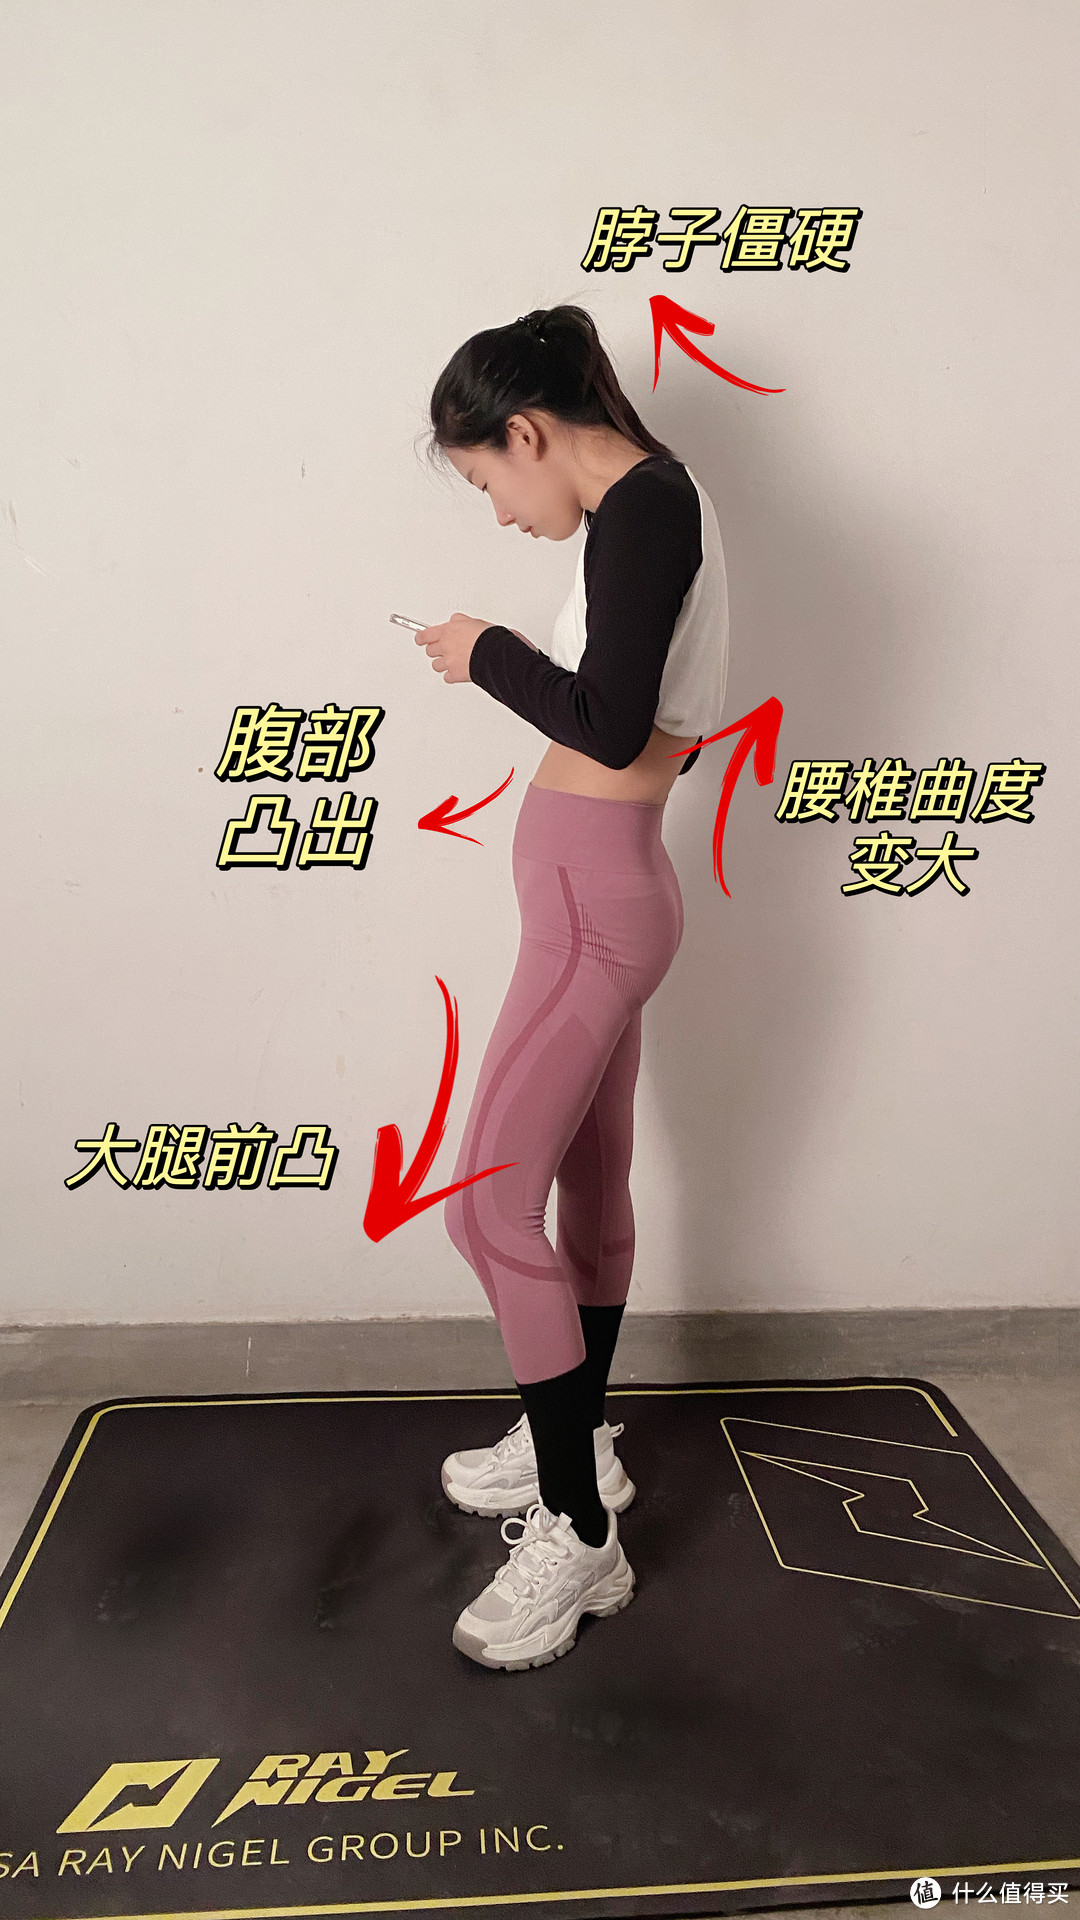 改善腿型---6个动作改善骨盆前倾， 拒绝假胯宽 ！自我检测+调整